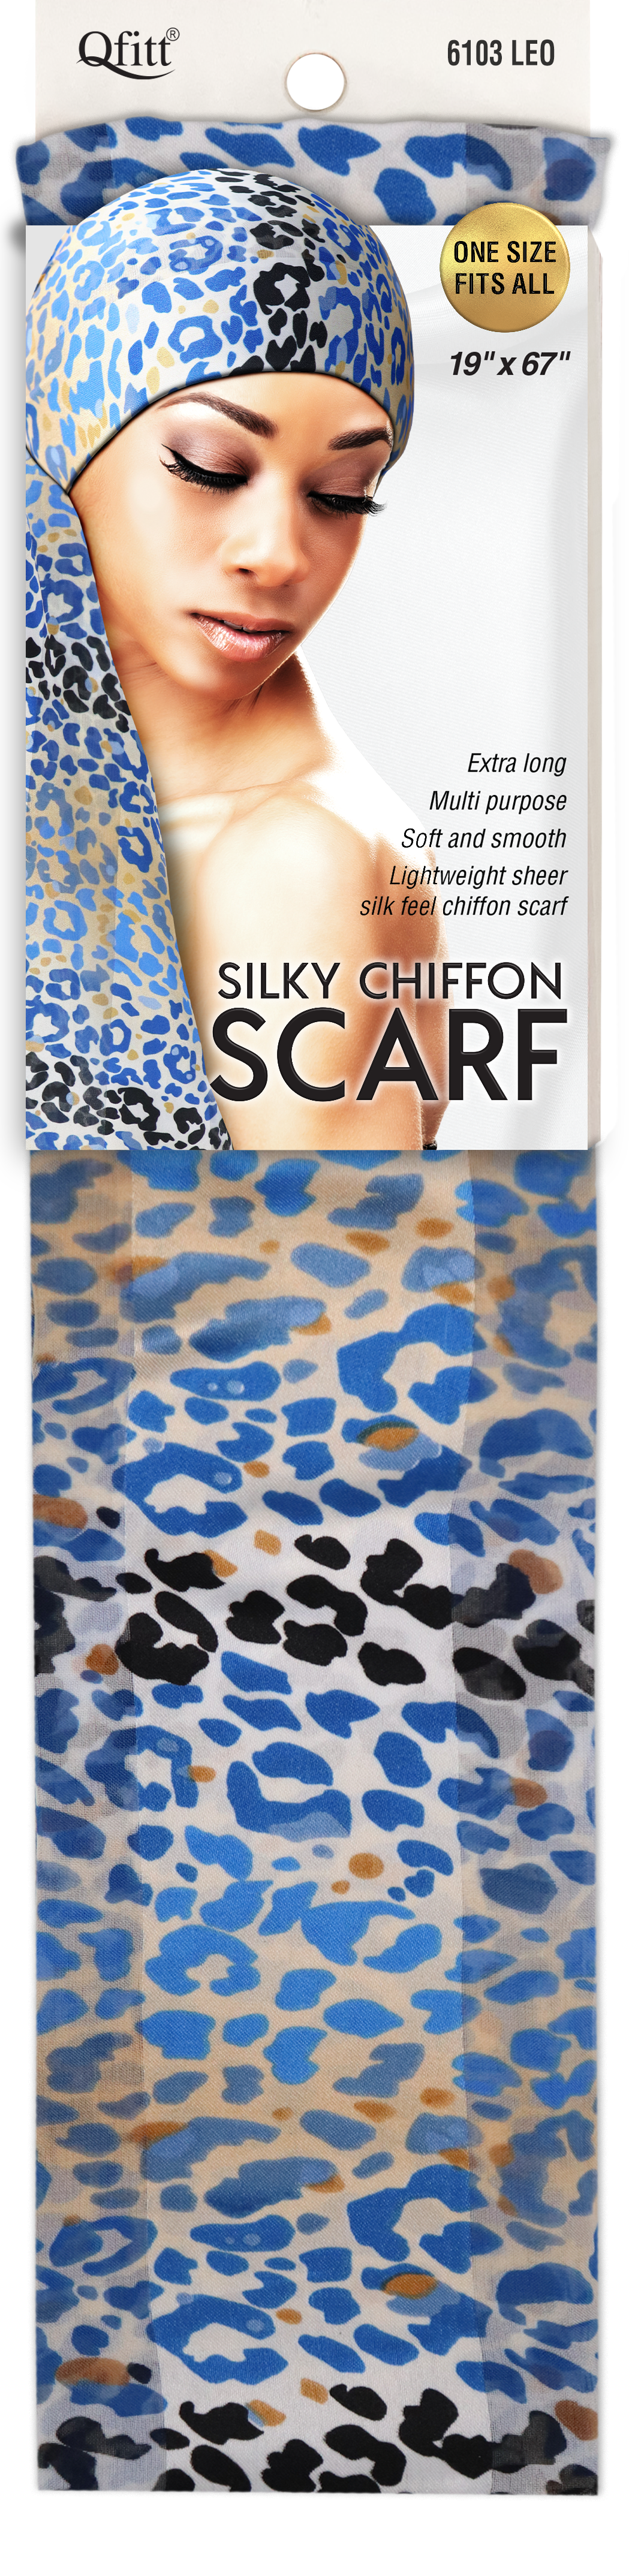 SILKY CHIFFON SCARF